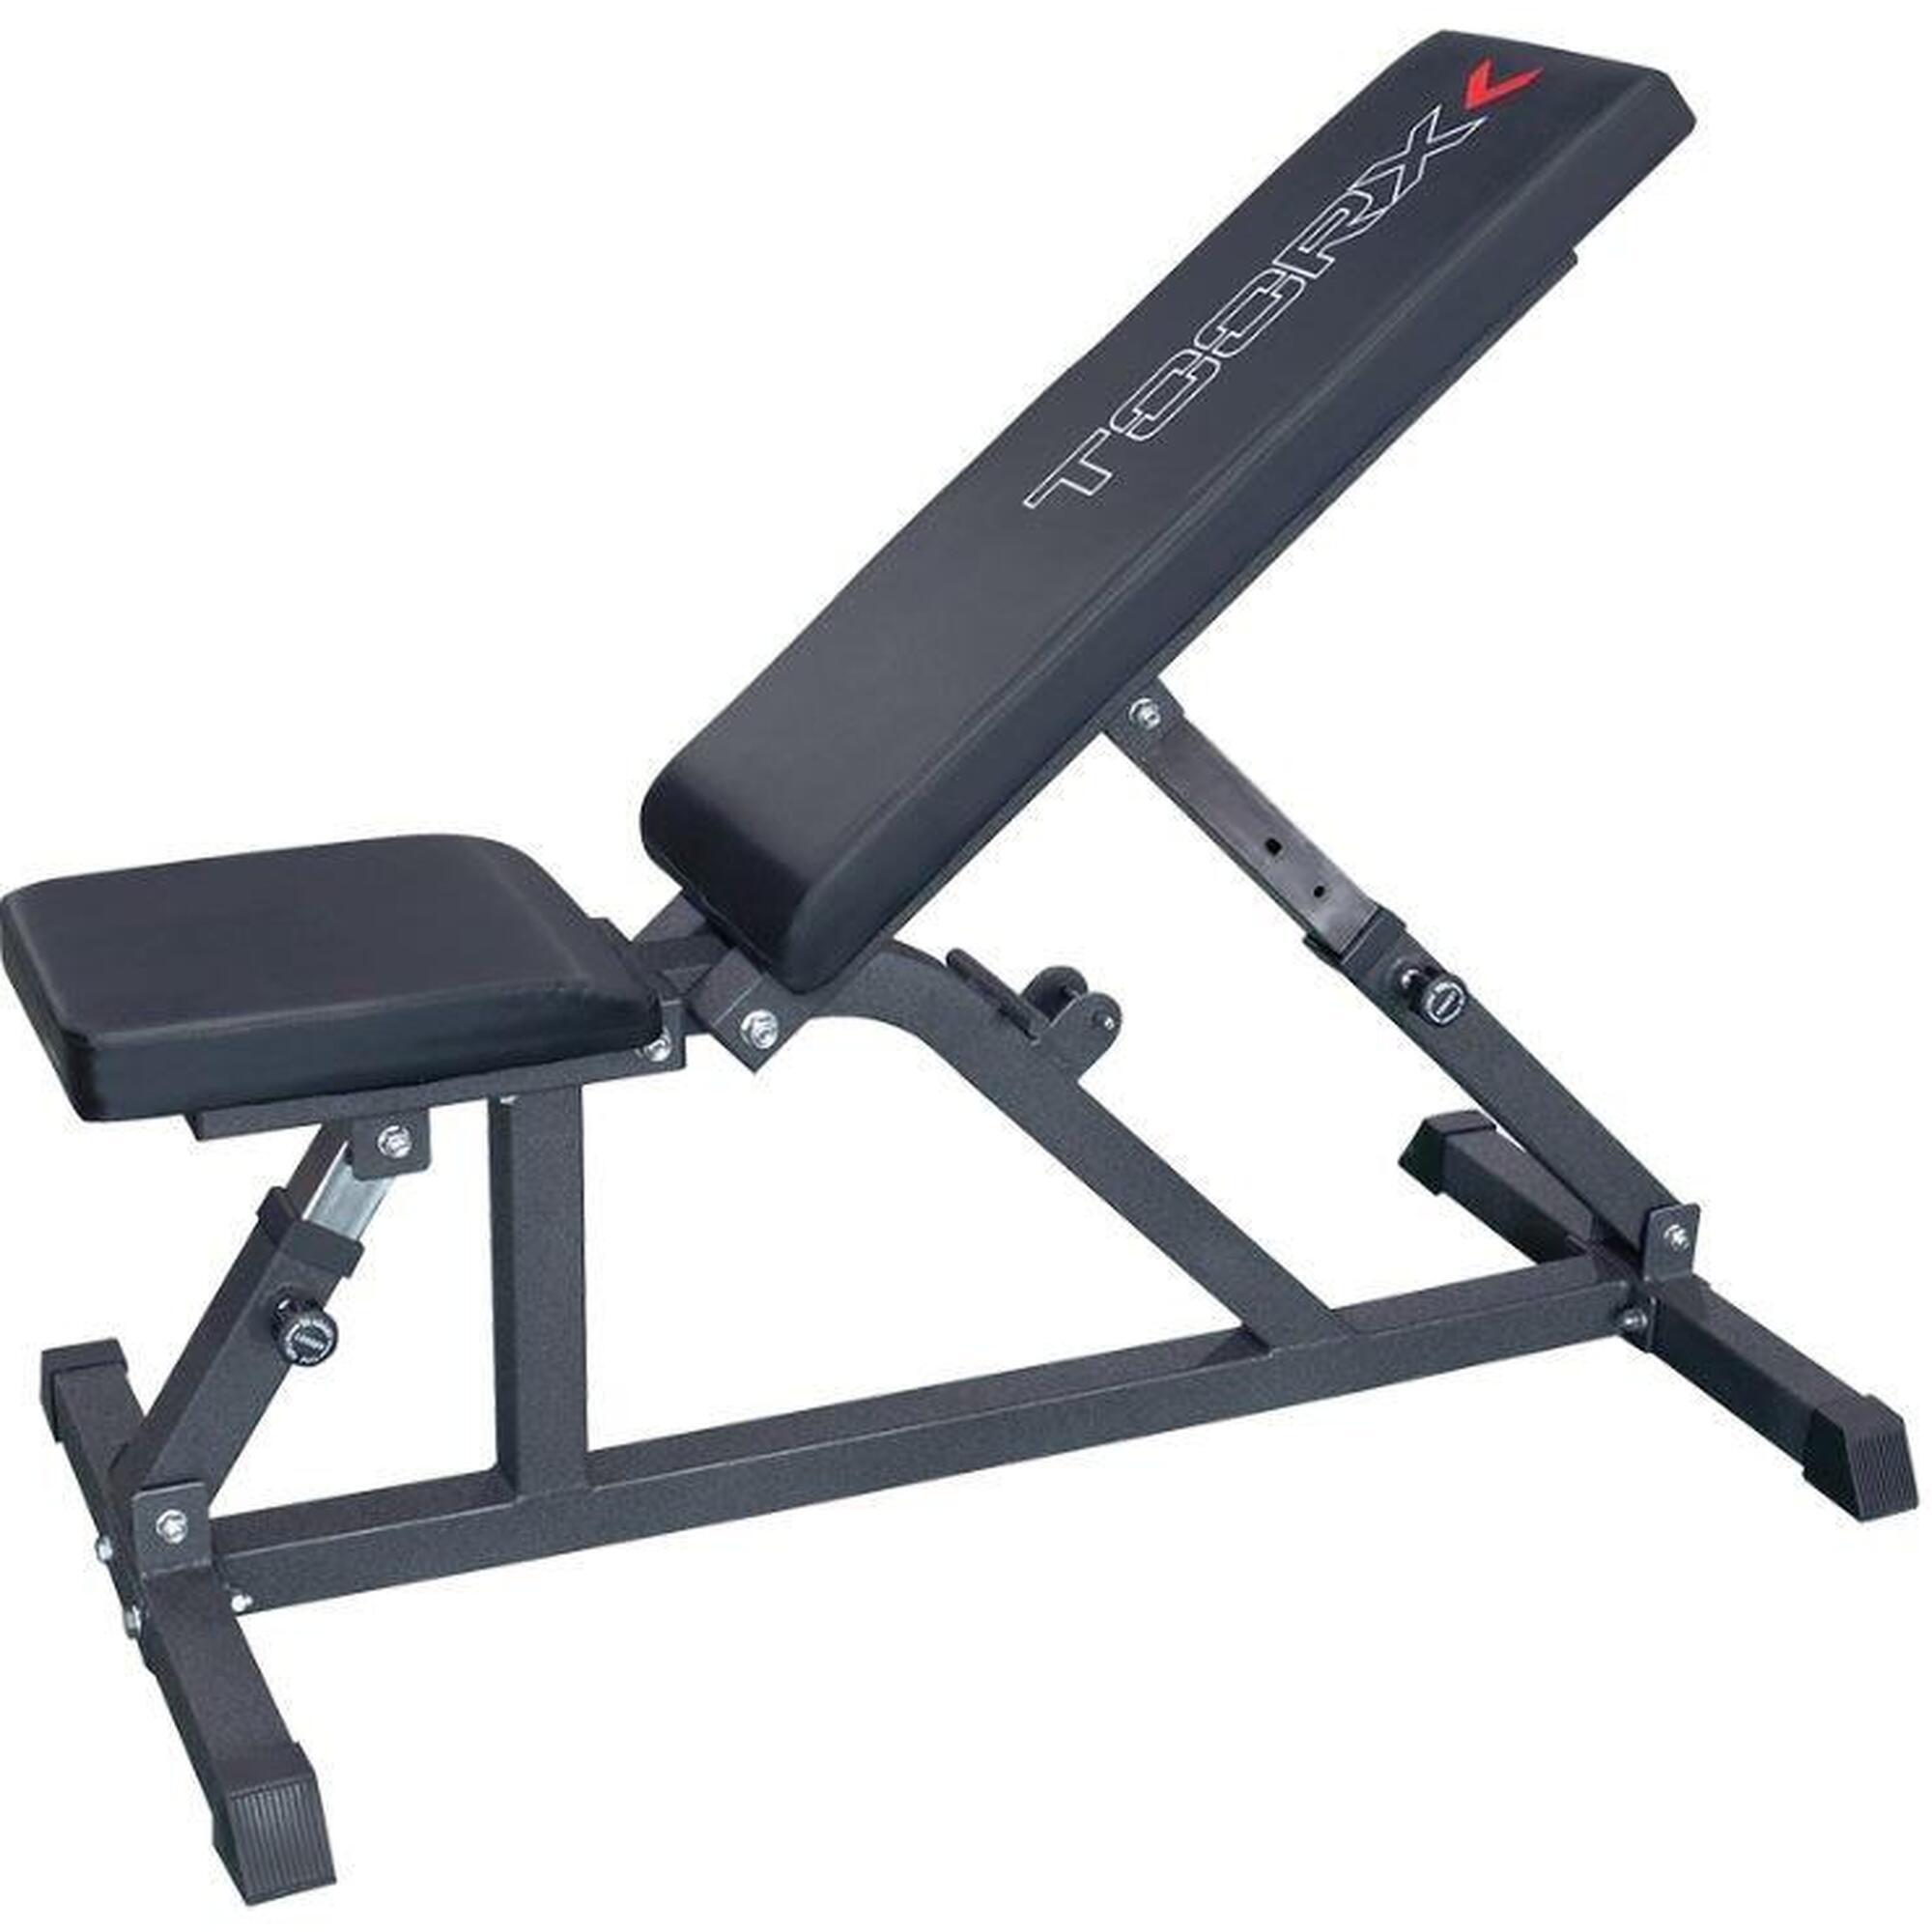 Banco reclinable TOORX WBX85 Versatilidad y comodidad en entrenamiento fitness.